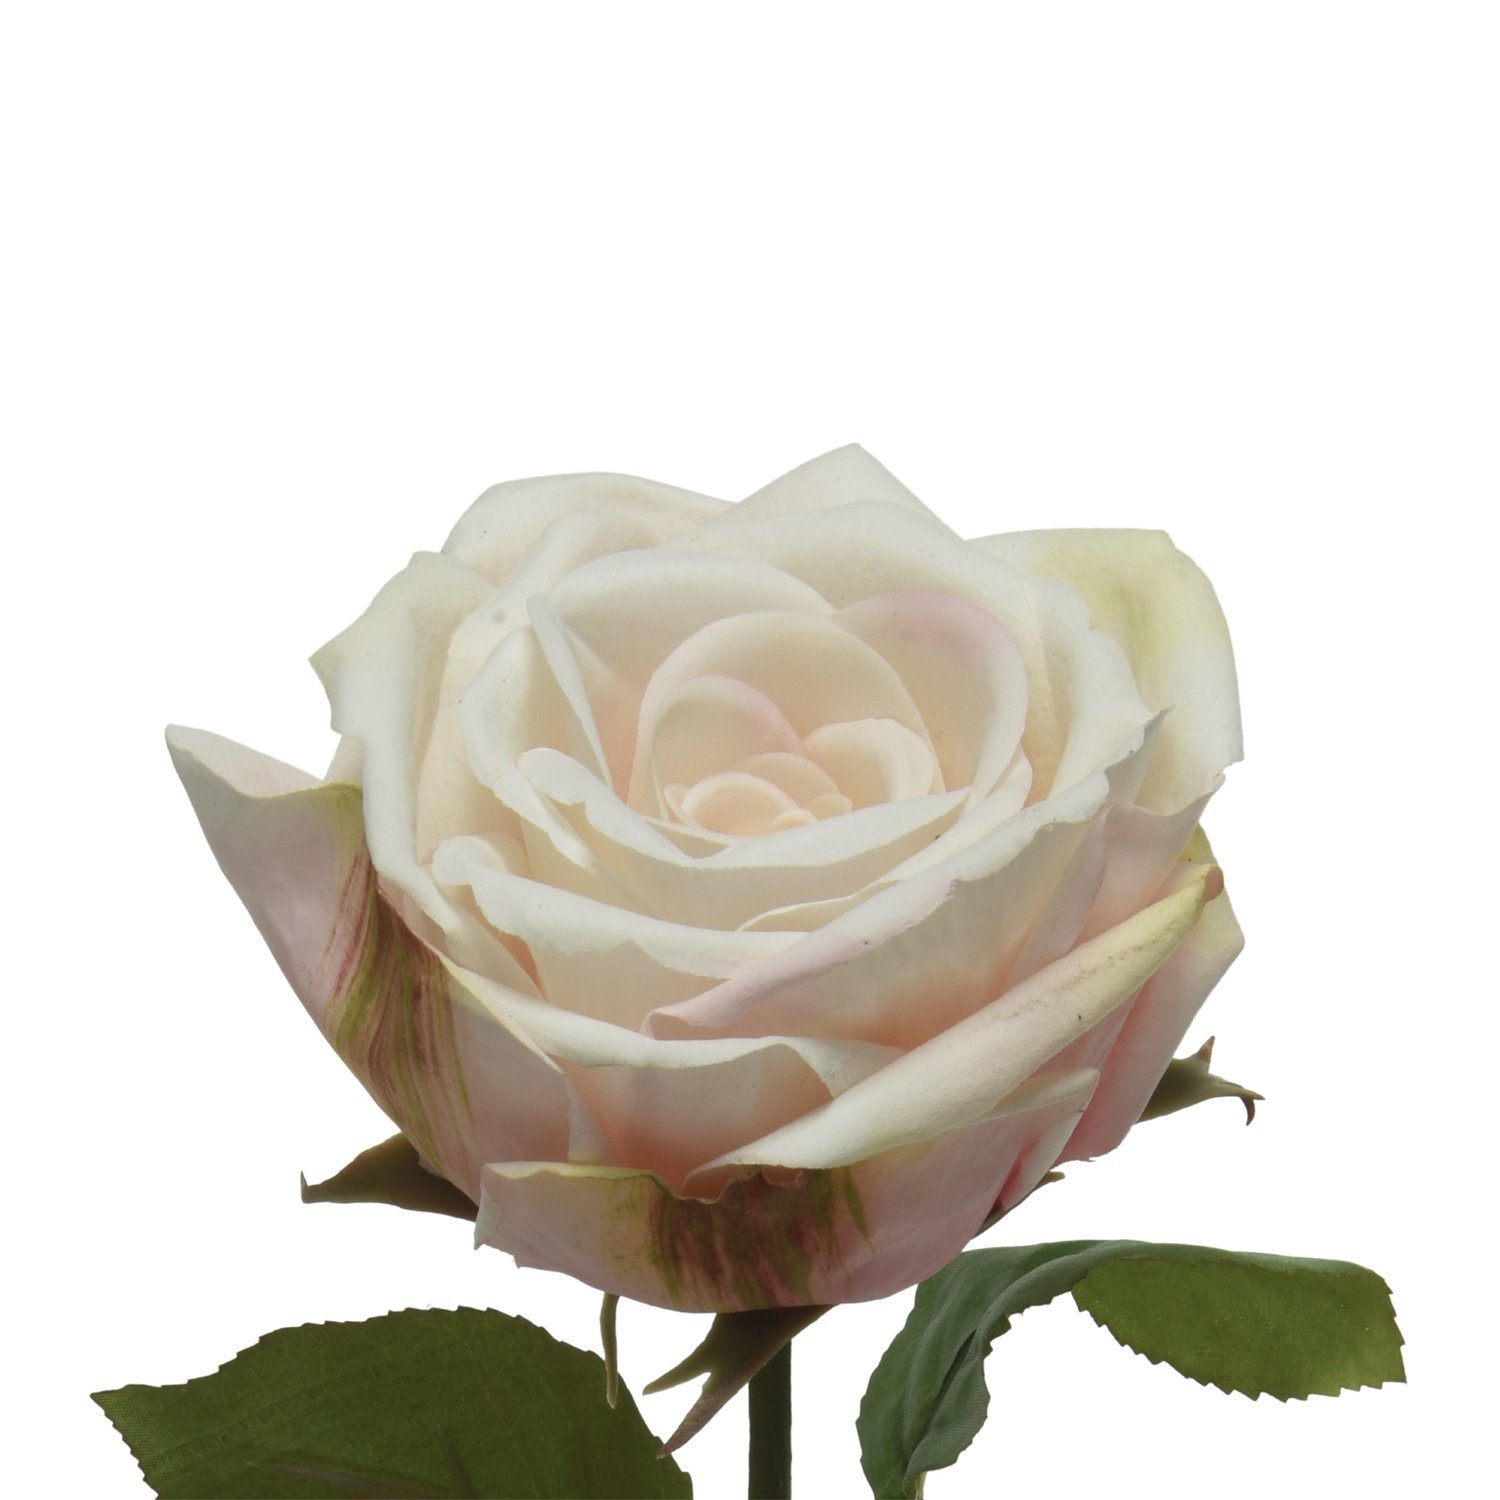 68 H: Kunstblume Stiel Rose cm 68cm Rosenblüte am creme, MARELIDA, Höhe Kunstblume Touch Real künstlich